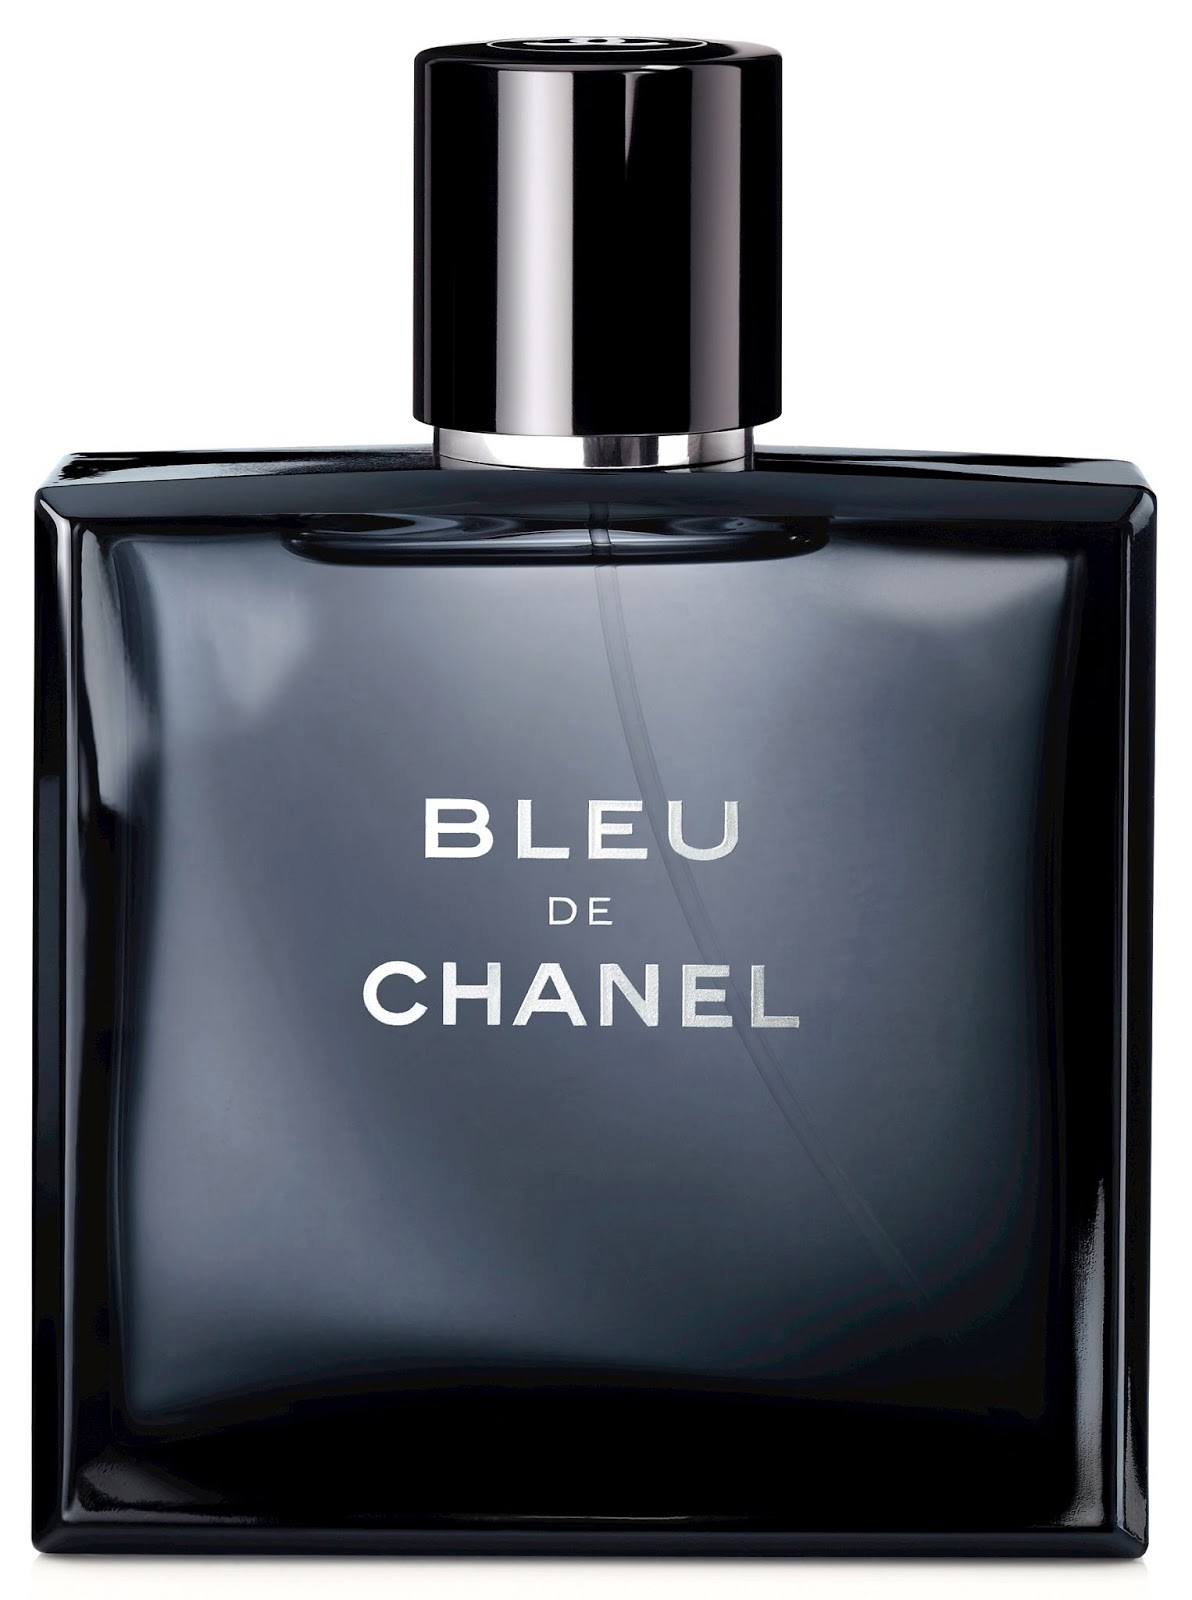 Chanel Launches Bleu De Chanel Eau De Parfum For Men The Fashionisto